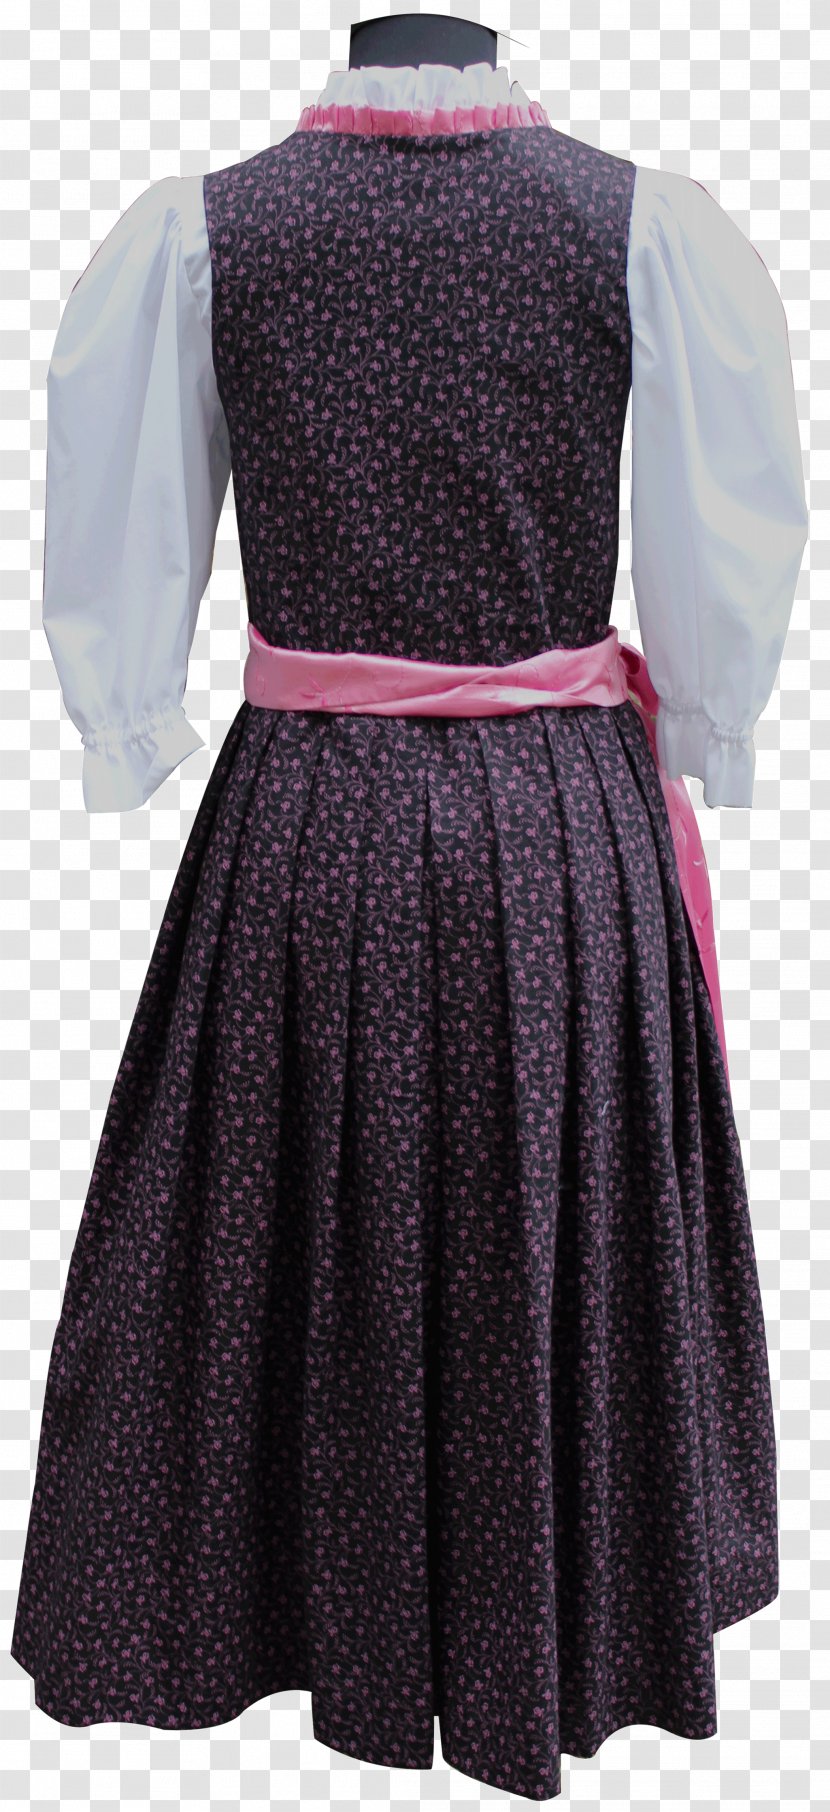 Polka Dot Dirndl Dress Skirt Apron Transparent PNG